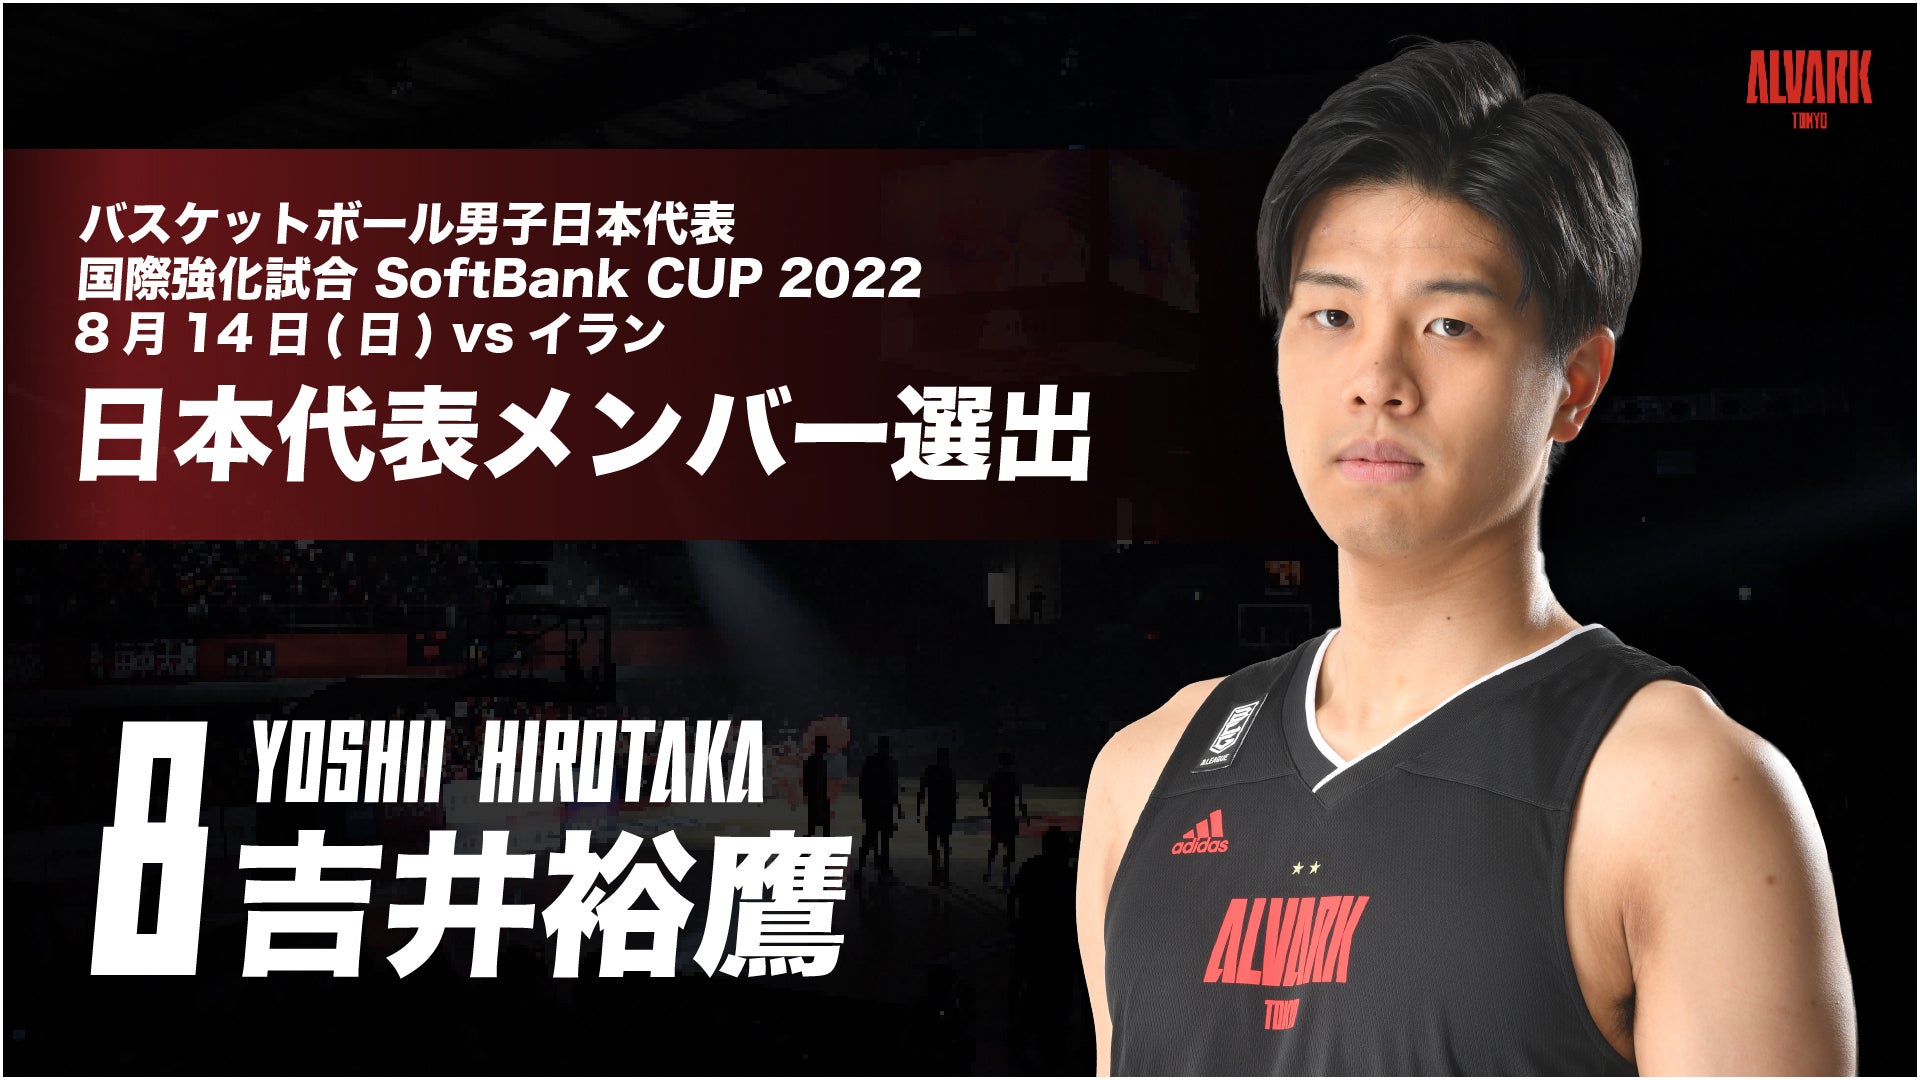 バスケットボール男子日本代表 国際強化試合 Softbank Cup 22 8 14 日 イラン戦 日本代表メンバー選出のお知らせ バスケットボールニュース